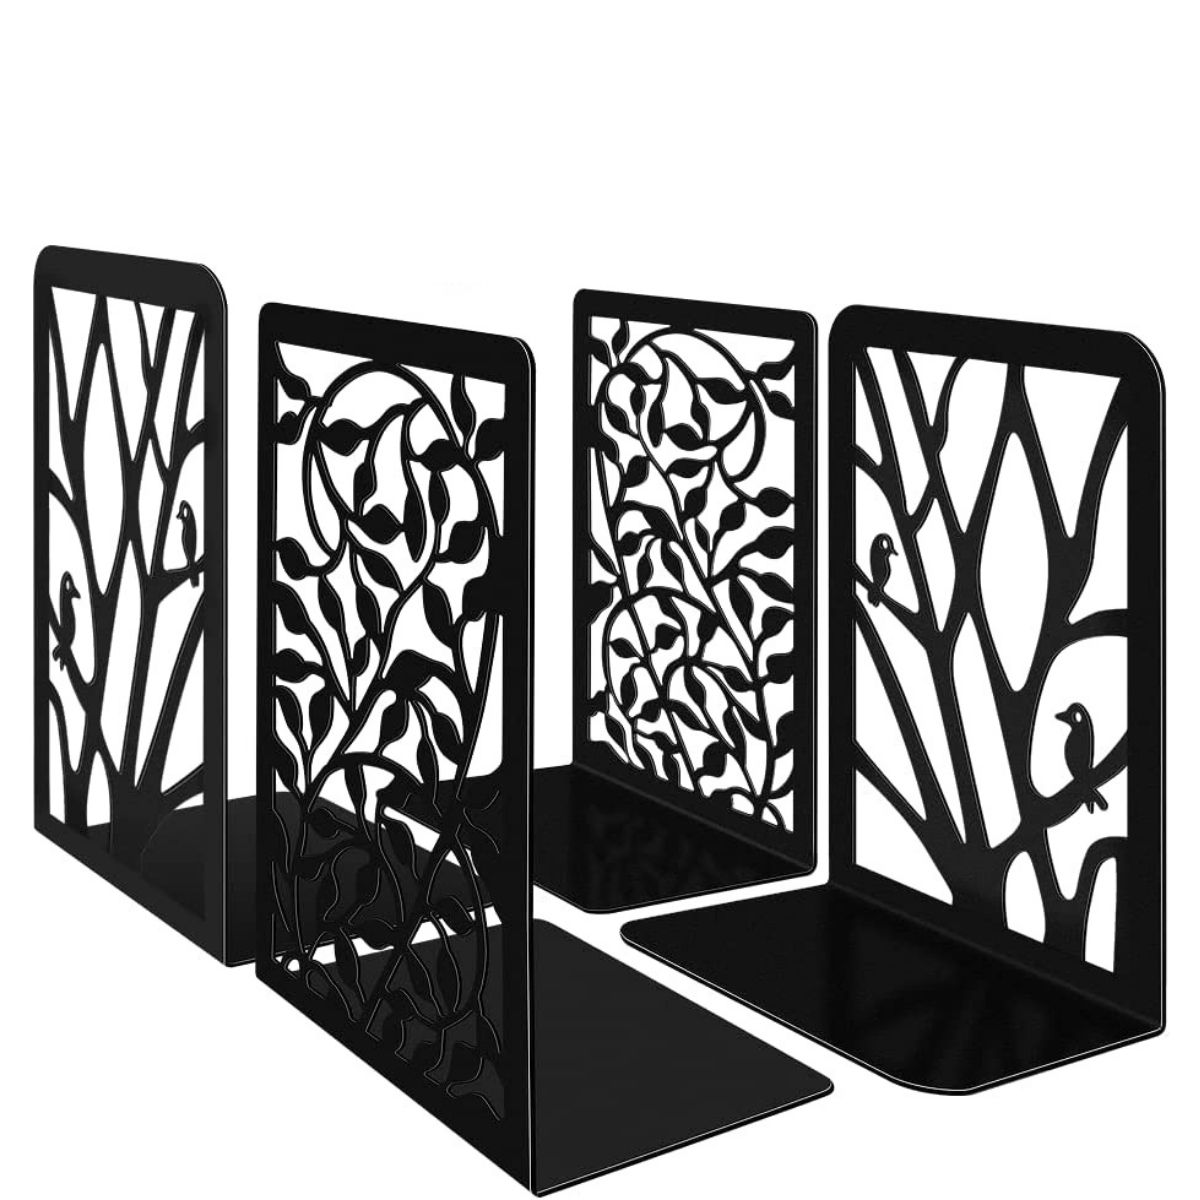 4 unidades de sujetalibros metálico negro árboles y hojas con pájaros